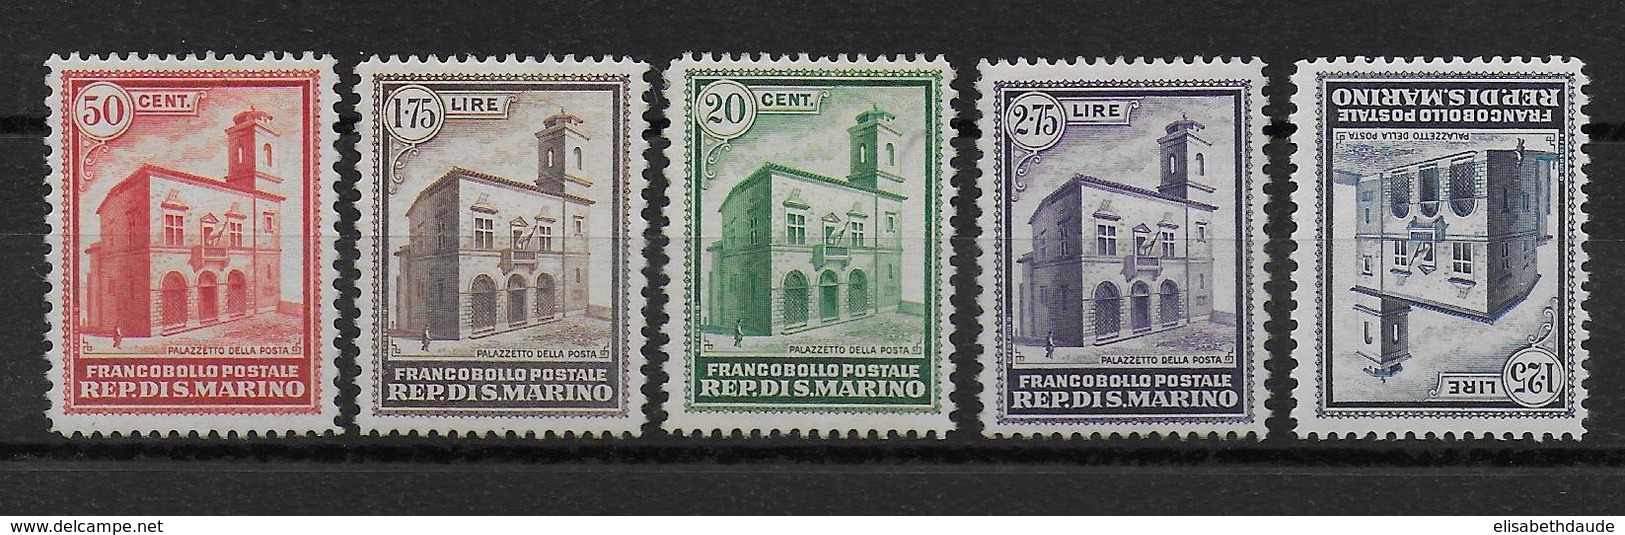 SAN MARINO - 1932 - YVERT N° 159/163 ** MNH (161 * MLH) - COTE = 680 EUR - Unused Stamps